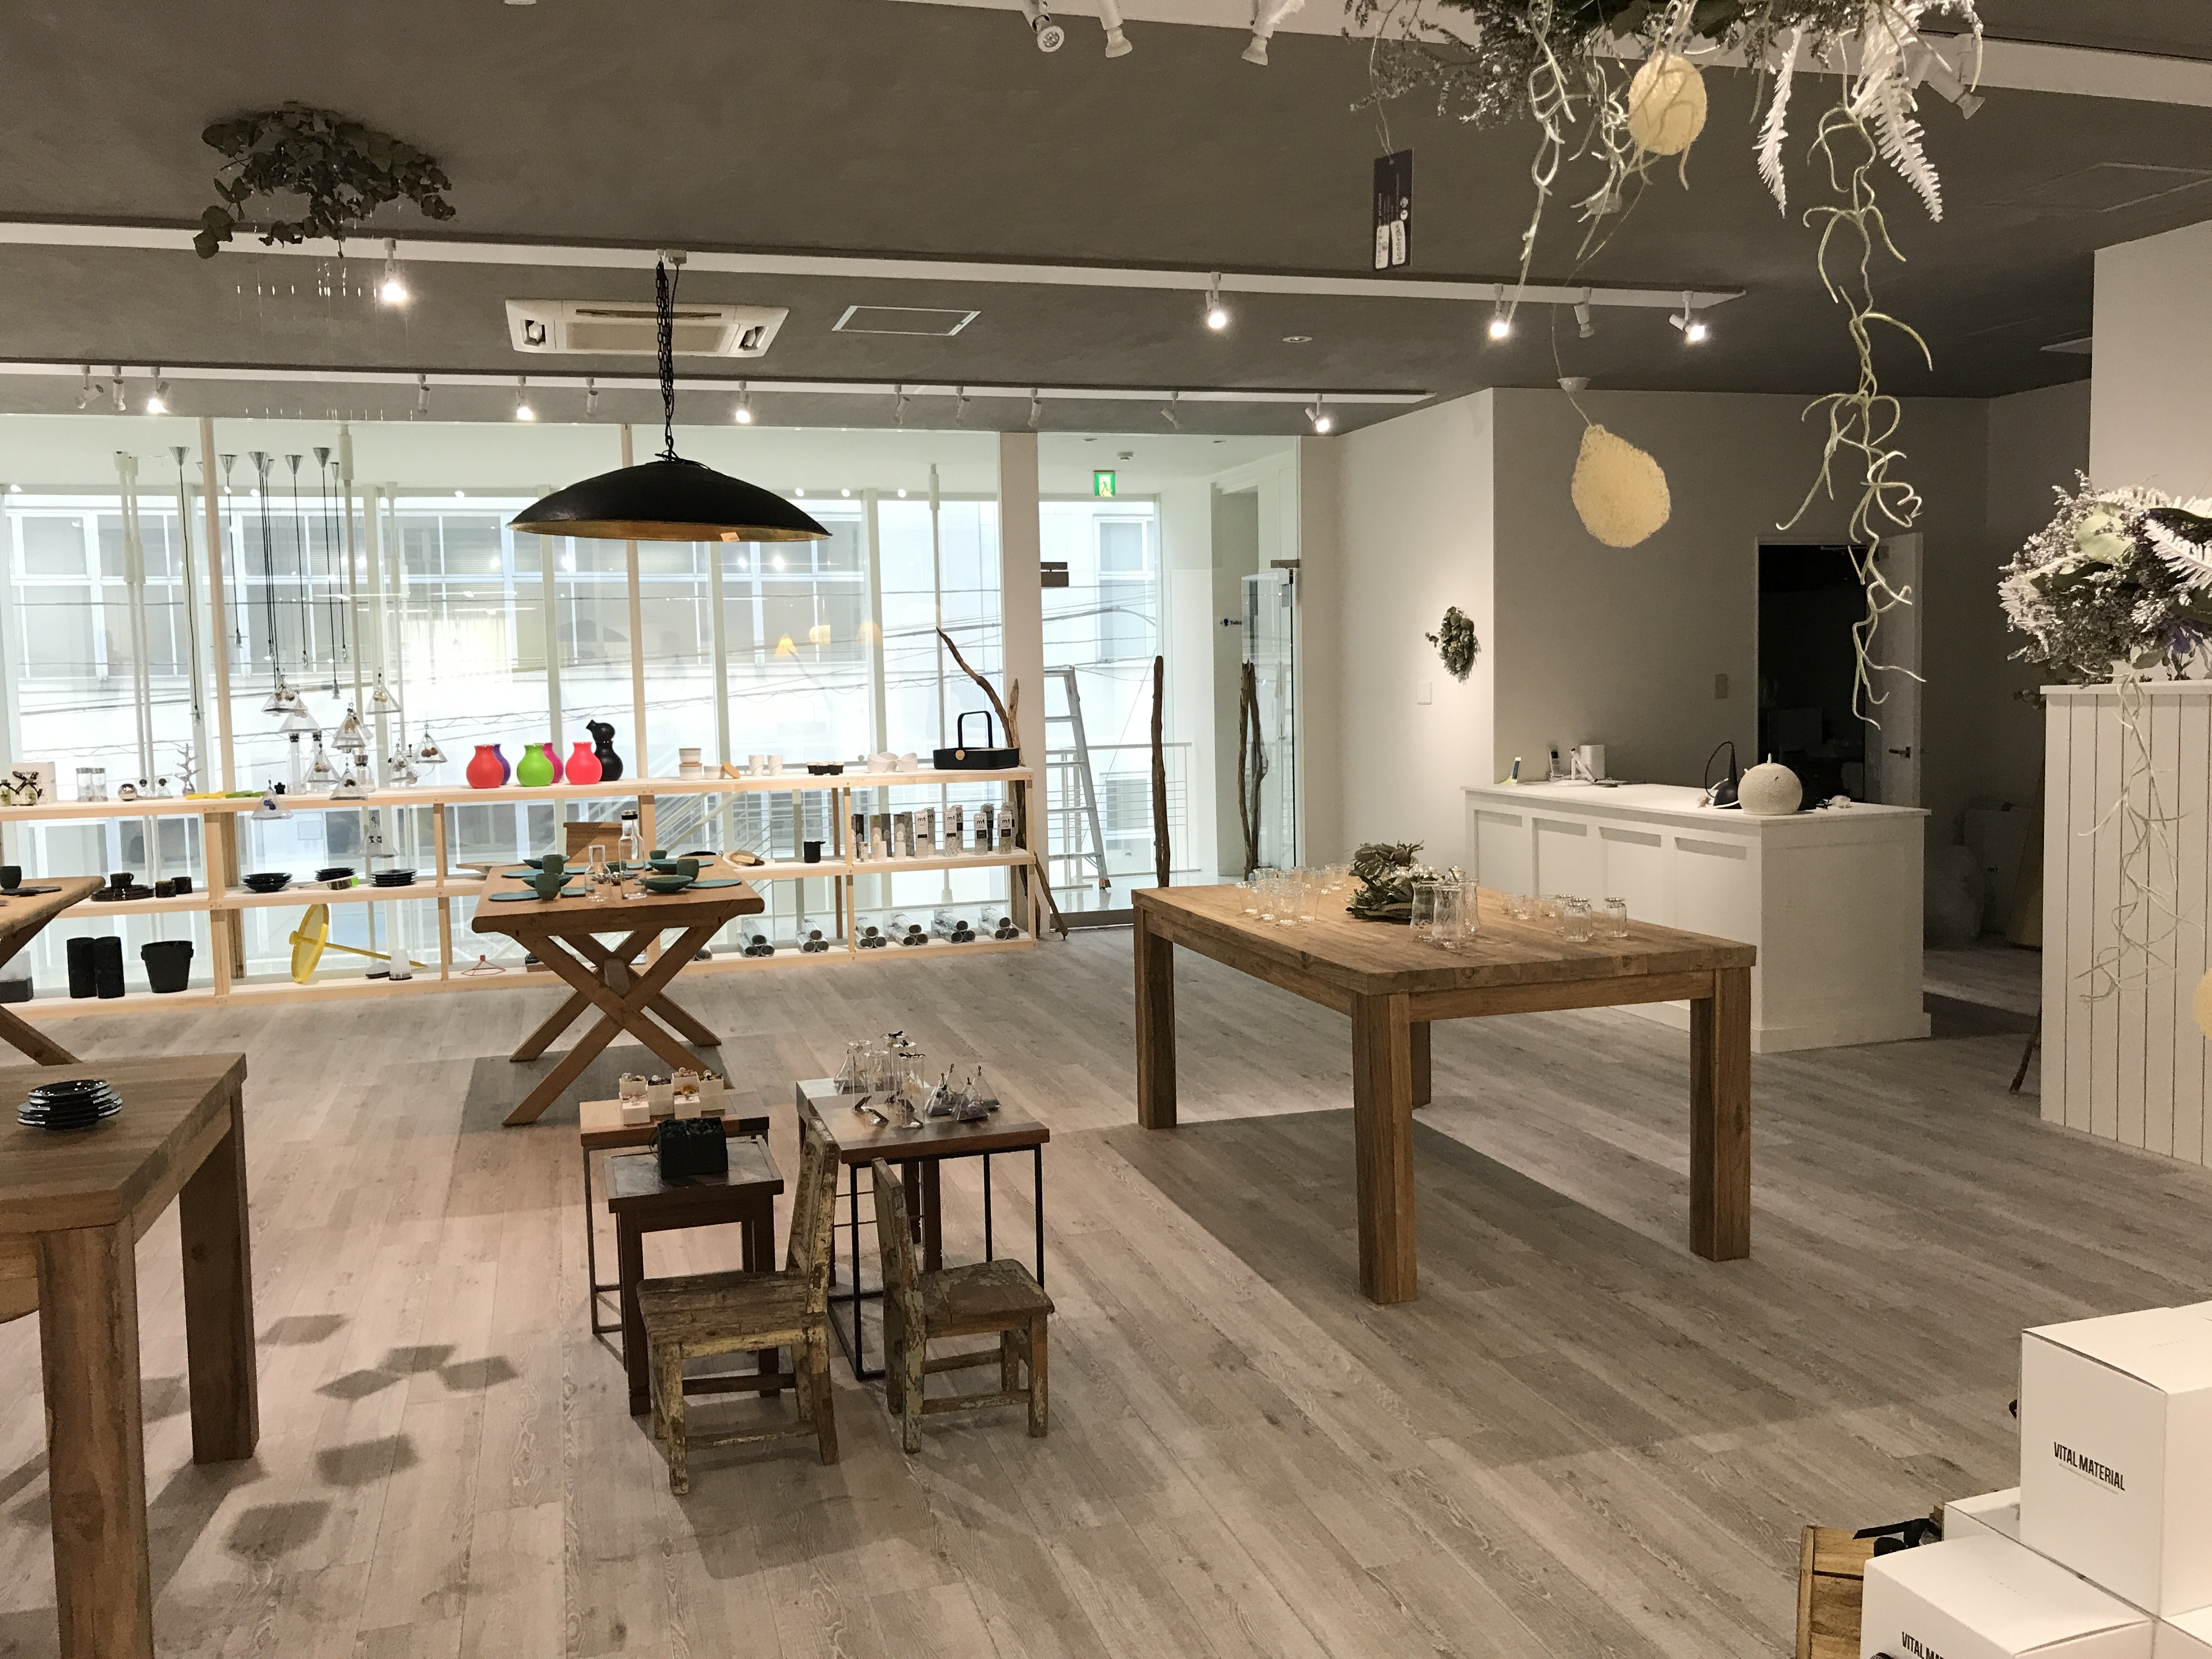 高崎に 北欧 をテーマにした複合店がオープン デンマークのライフスタイル ヒュッゲ も体感できる空間に 株式会社アルトのプレスリリース